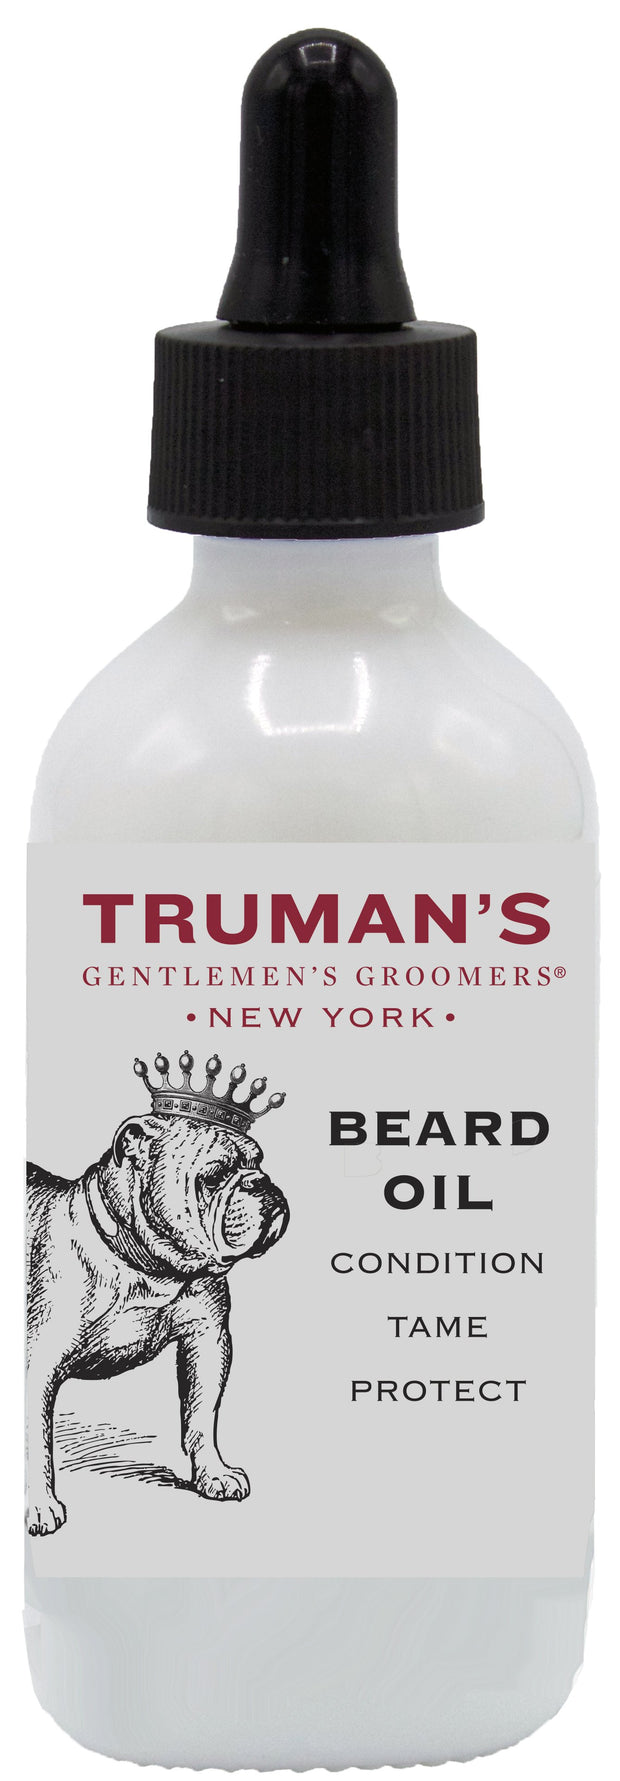 Truman's Gentlemen's Groomers Beard Oil